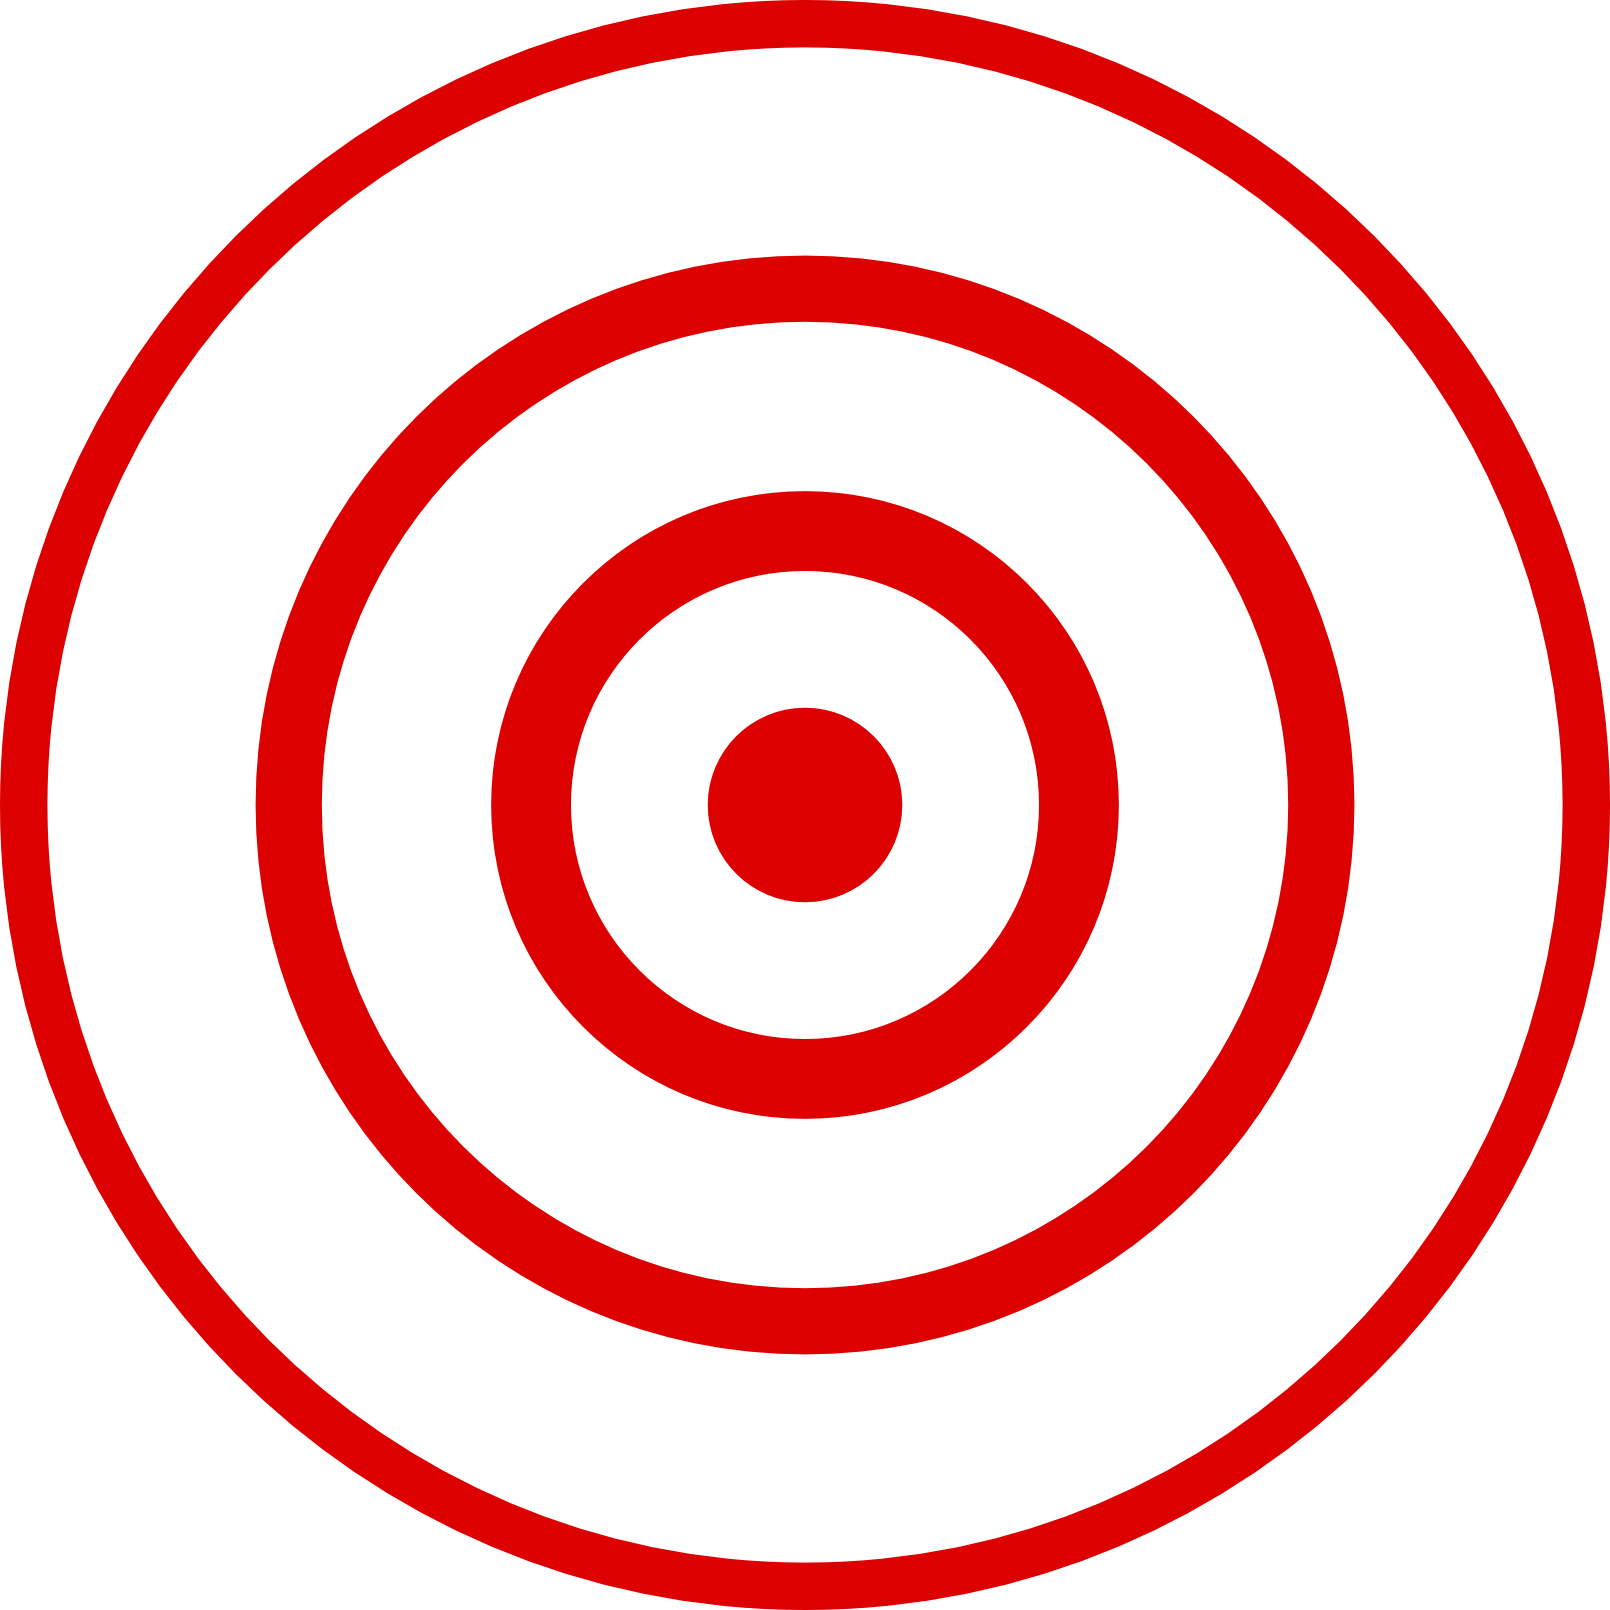 Bullseye. Bullseye Clip Art